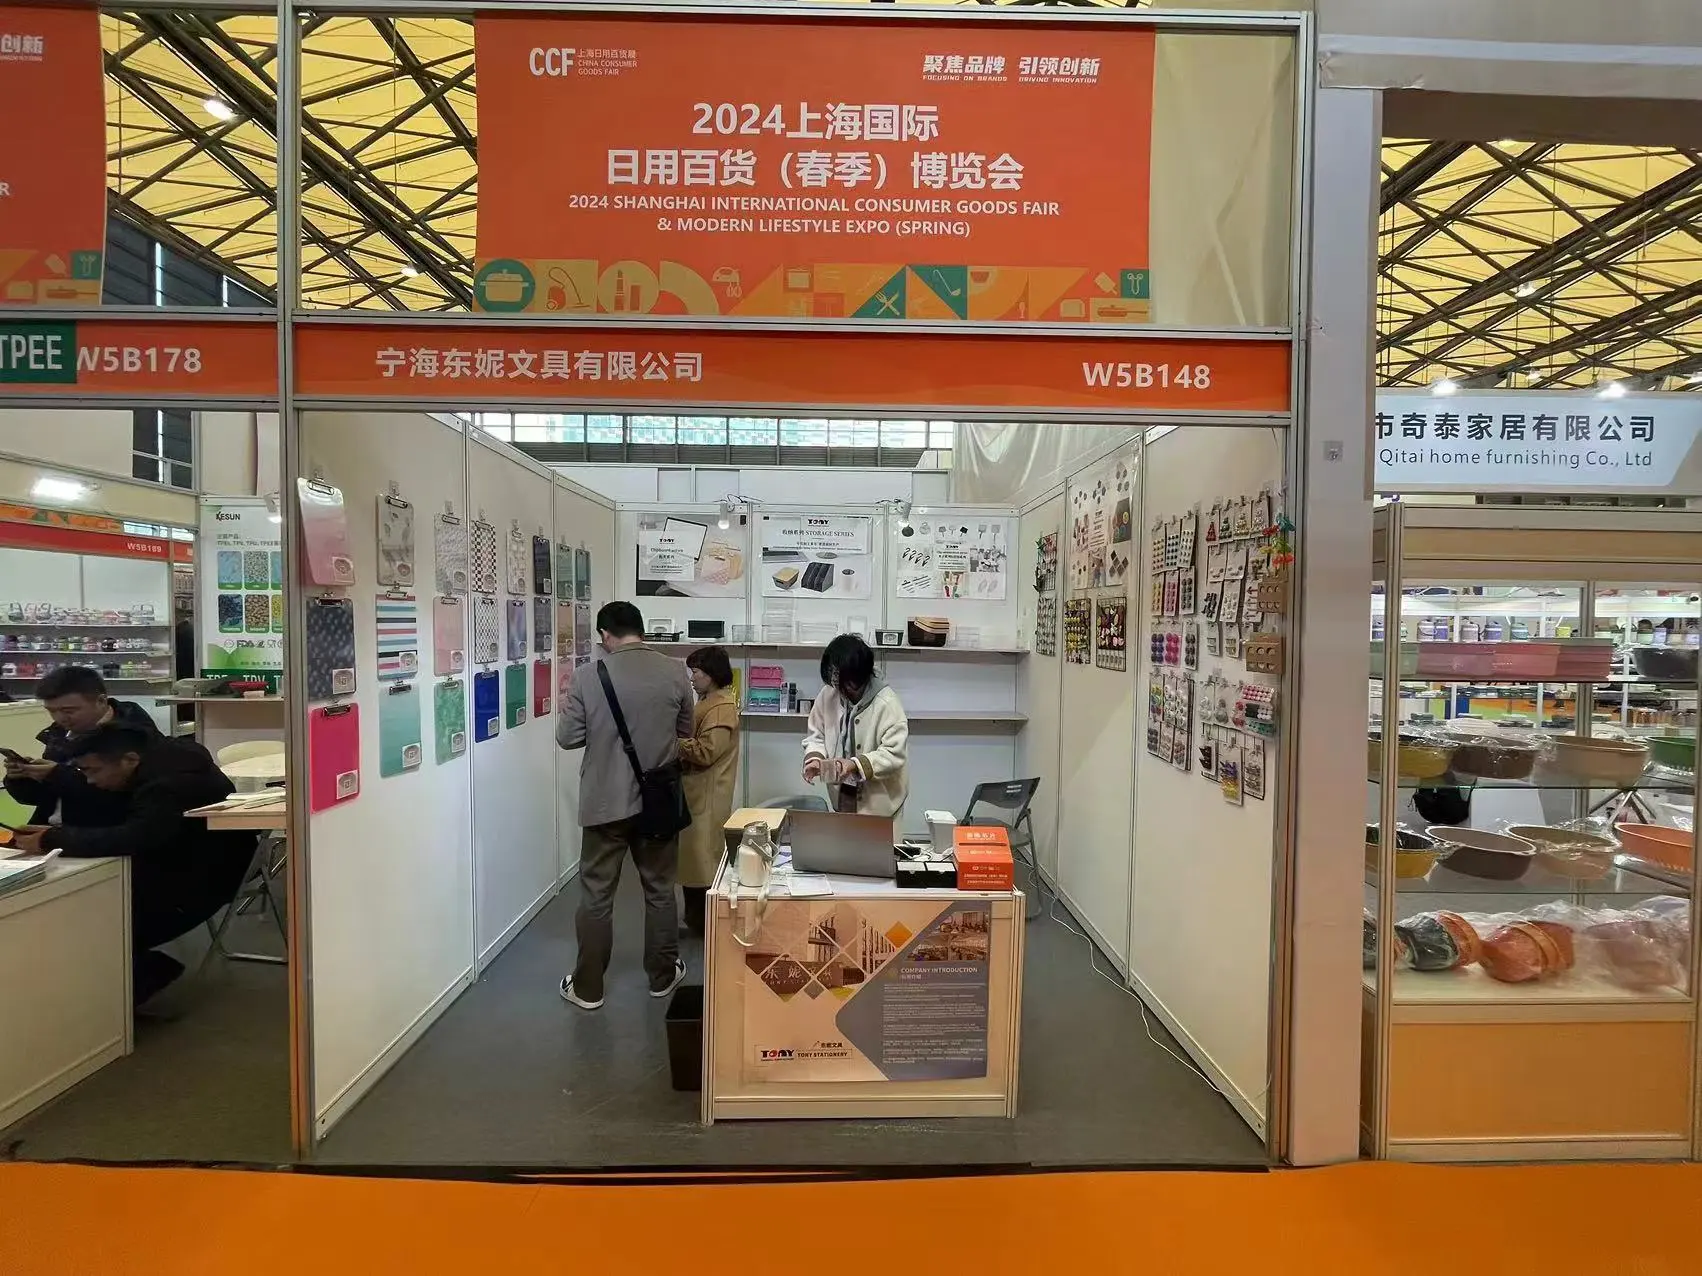 Tony Stationery stellt auf der Shanghai International Consumer Goods Fair 2024 aus